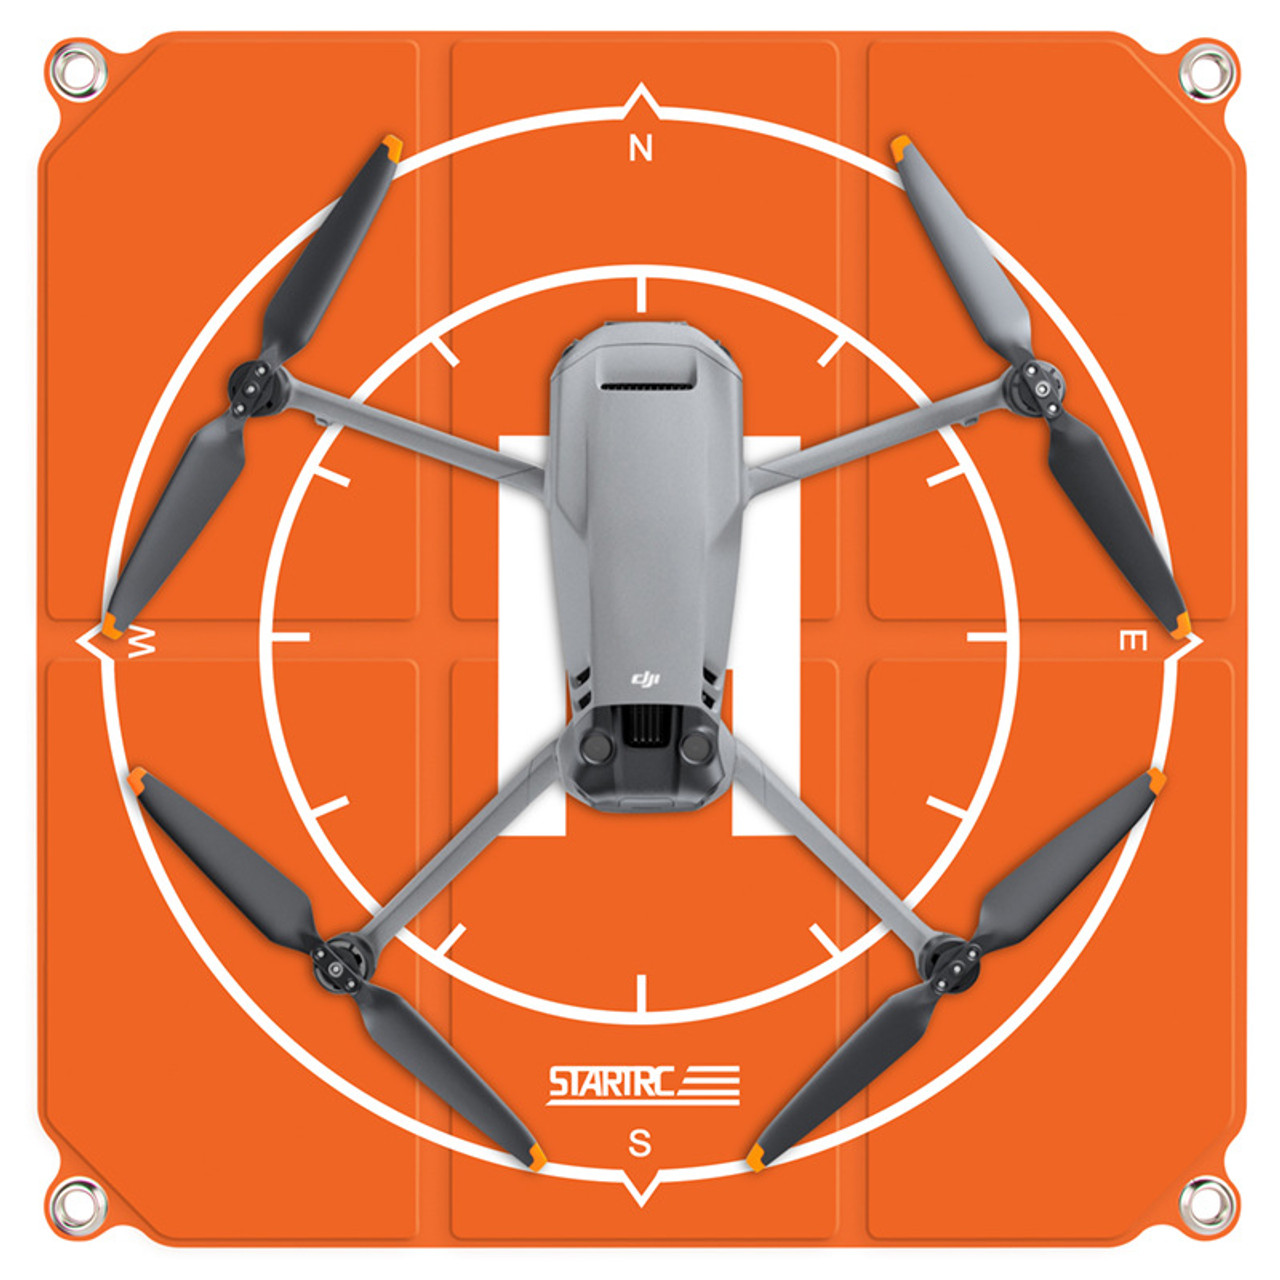 STARTRC Waterproof Landing Pad for DJI FPV, FIMI X8MINI Drone